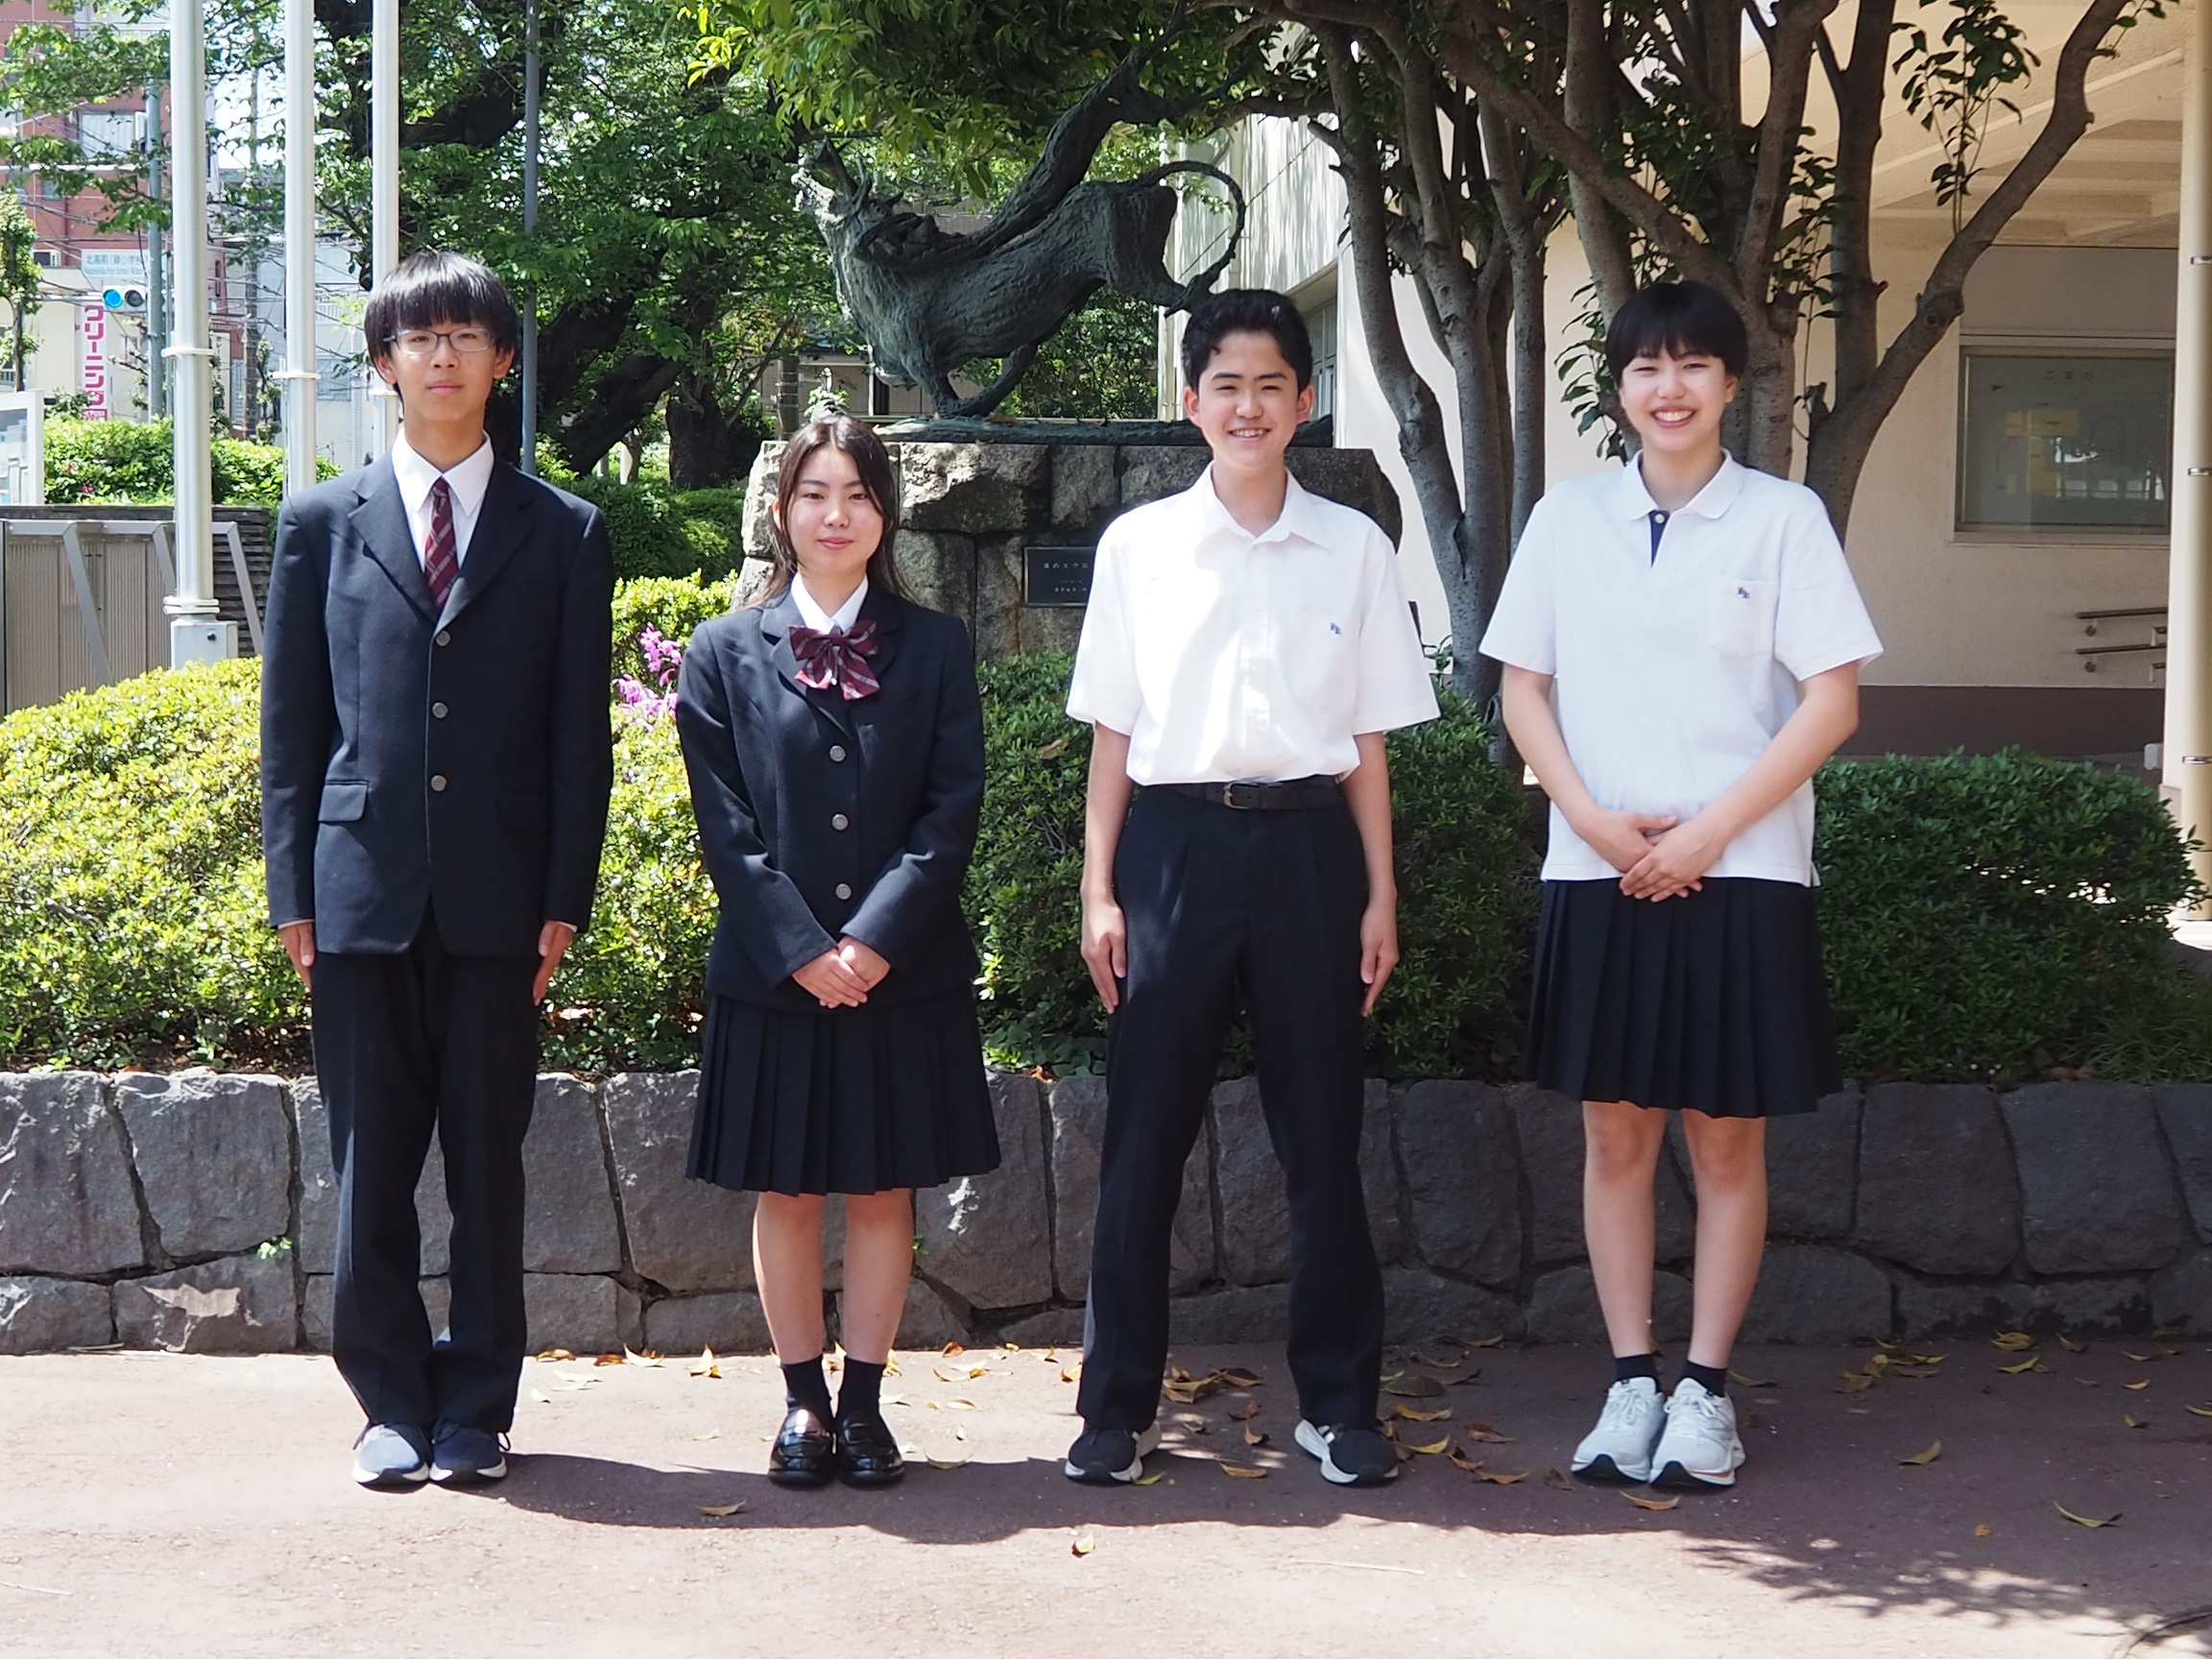 小金井北高等学校の制服